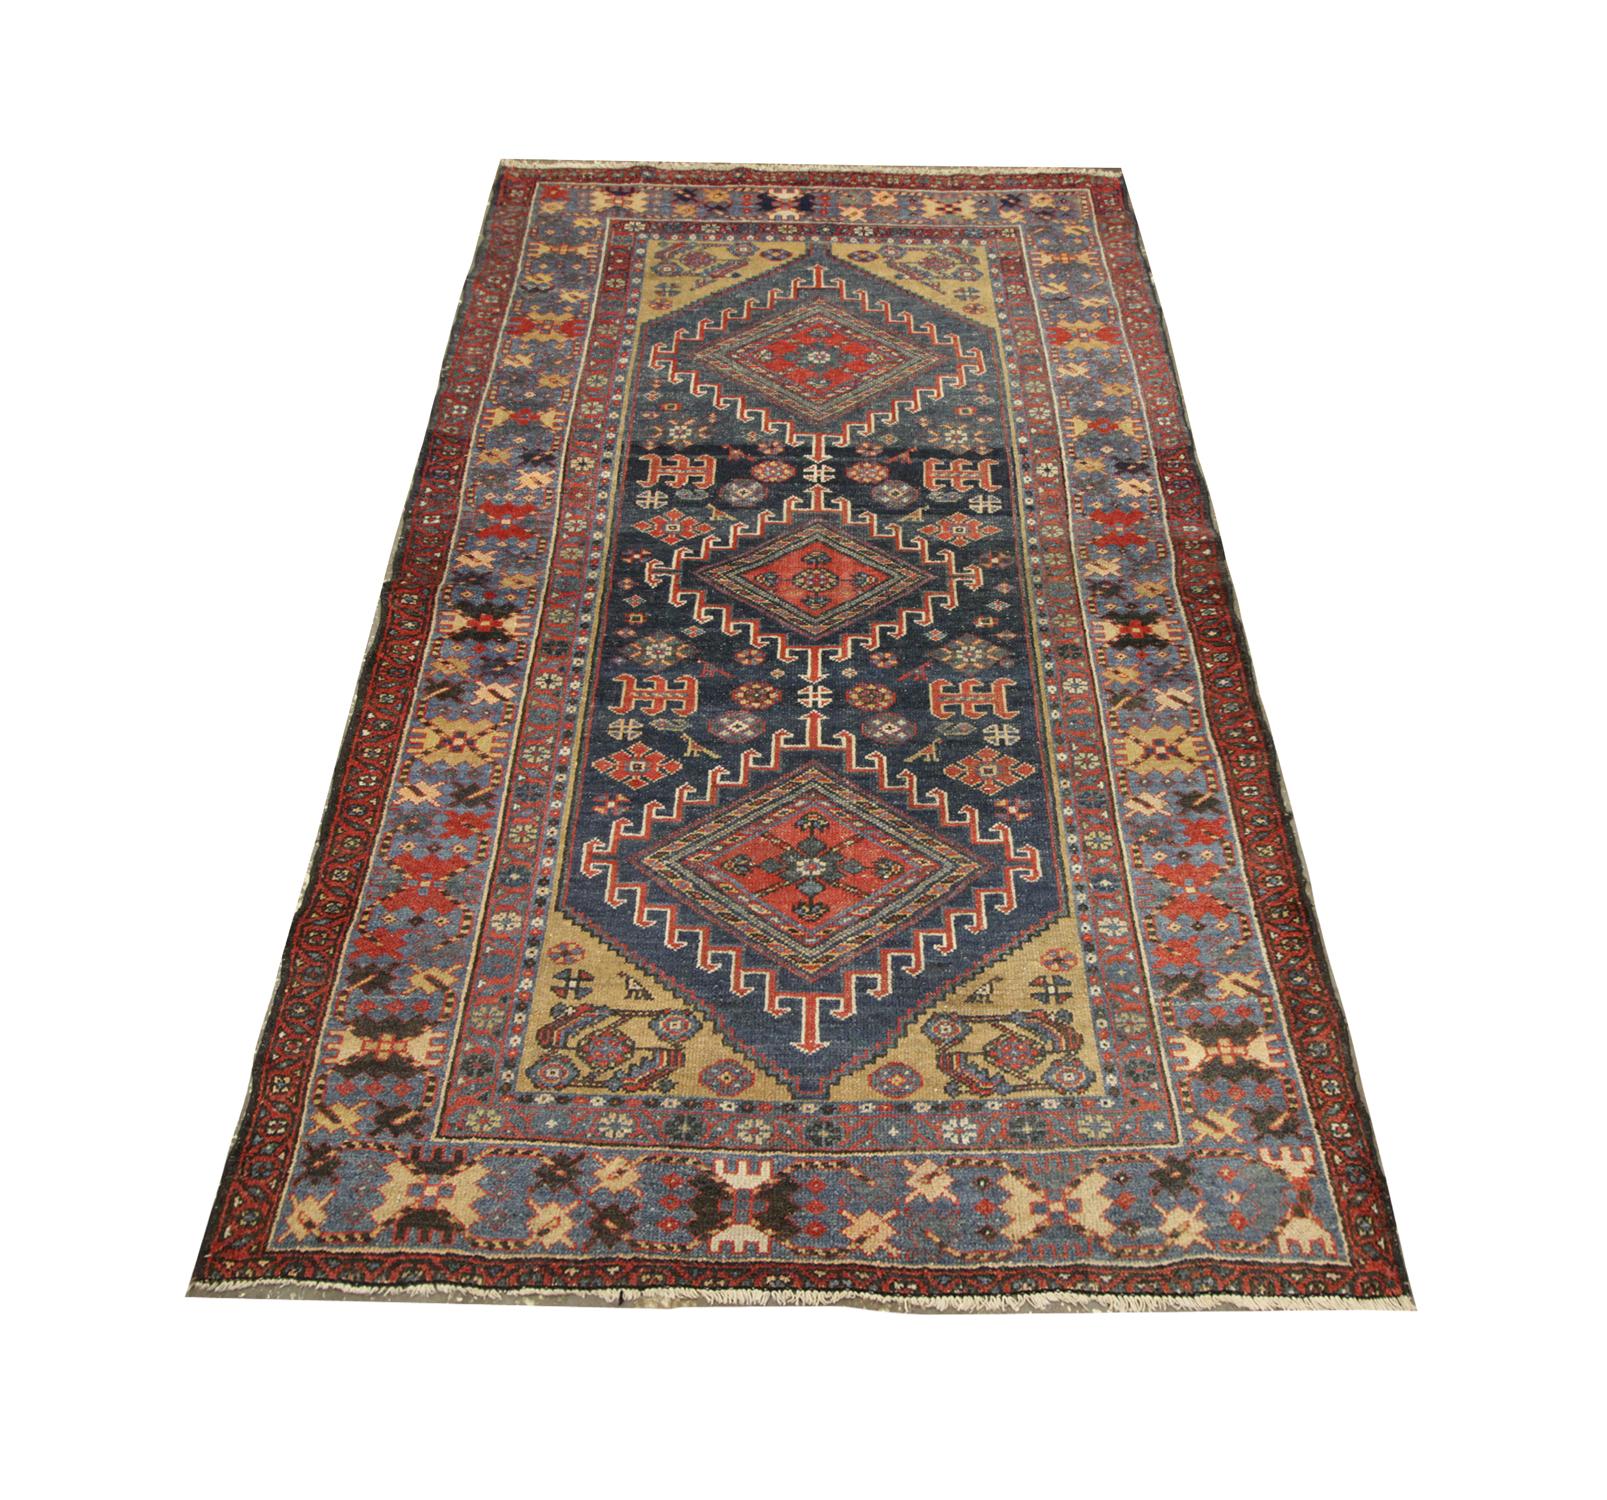 Dieser hochwertige antike kaukasische Teppich wurde 1920 aus handgesponnener, pflanzlich gefärbter Wolle und Baumwolle von einigen der besten Teppichhandwerker handgewebt. Dieser Teppich eignet sich sowohl für moderne als auch für traditionelle